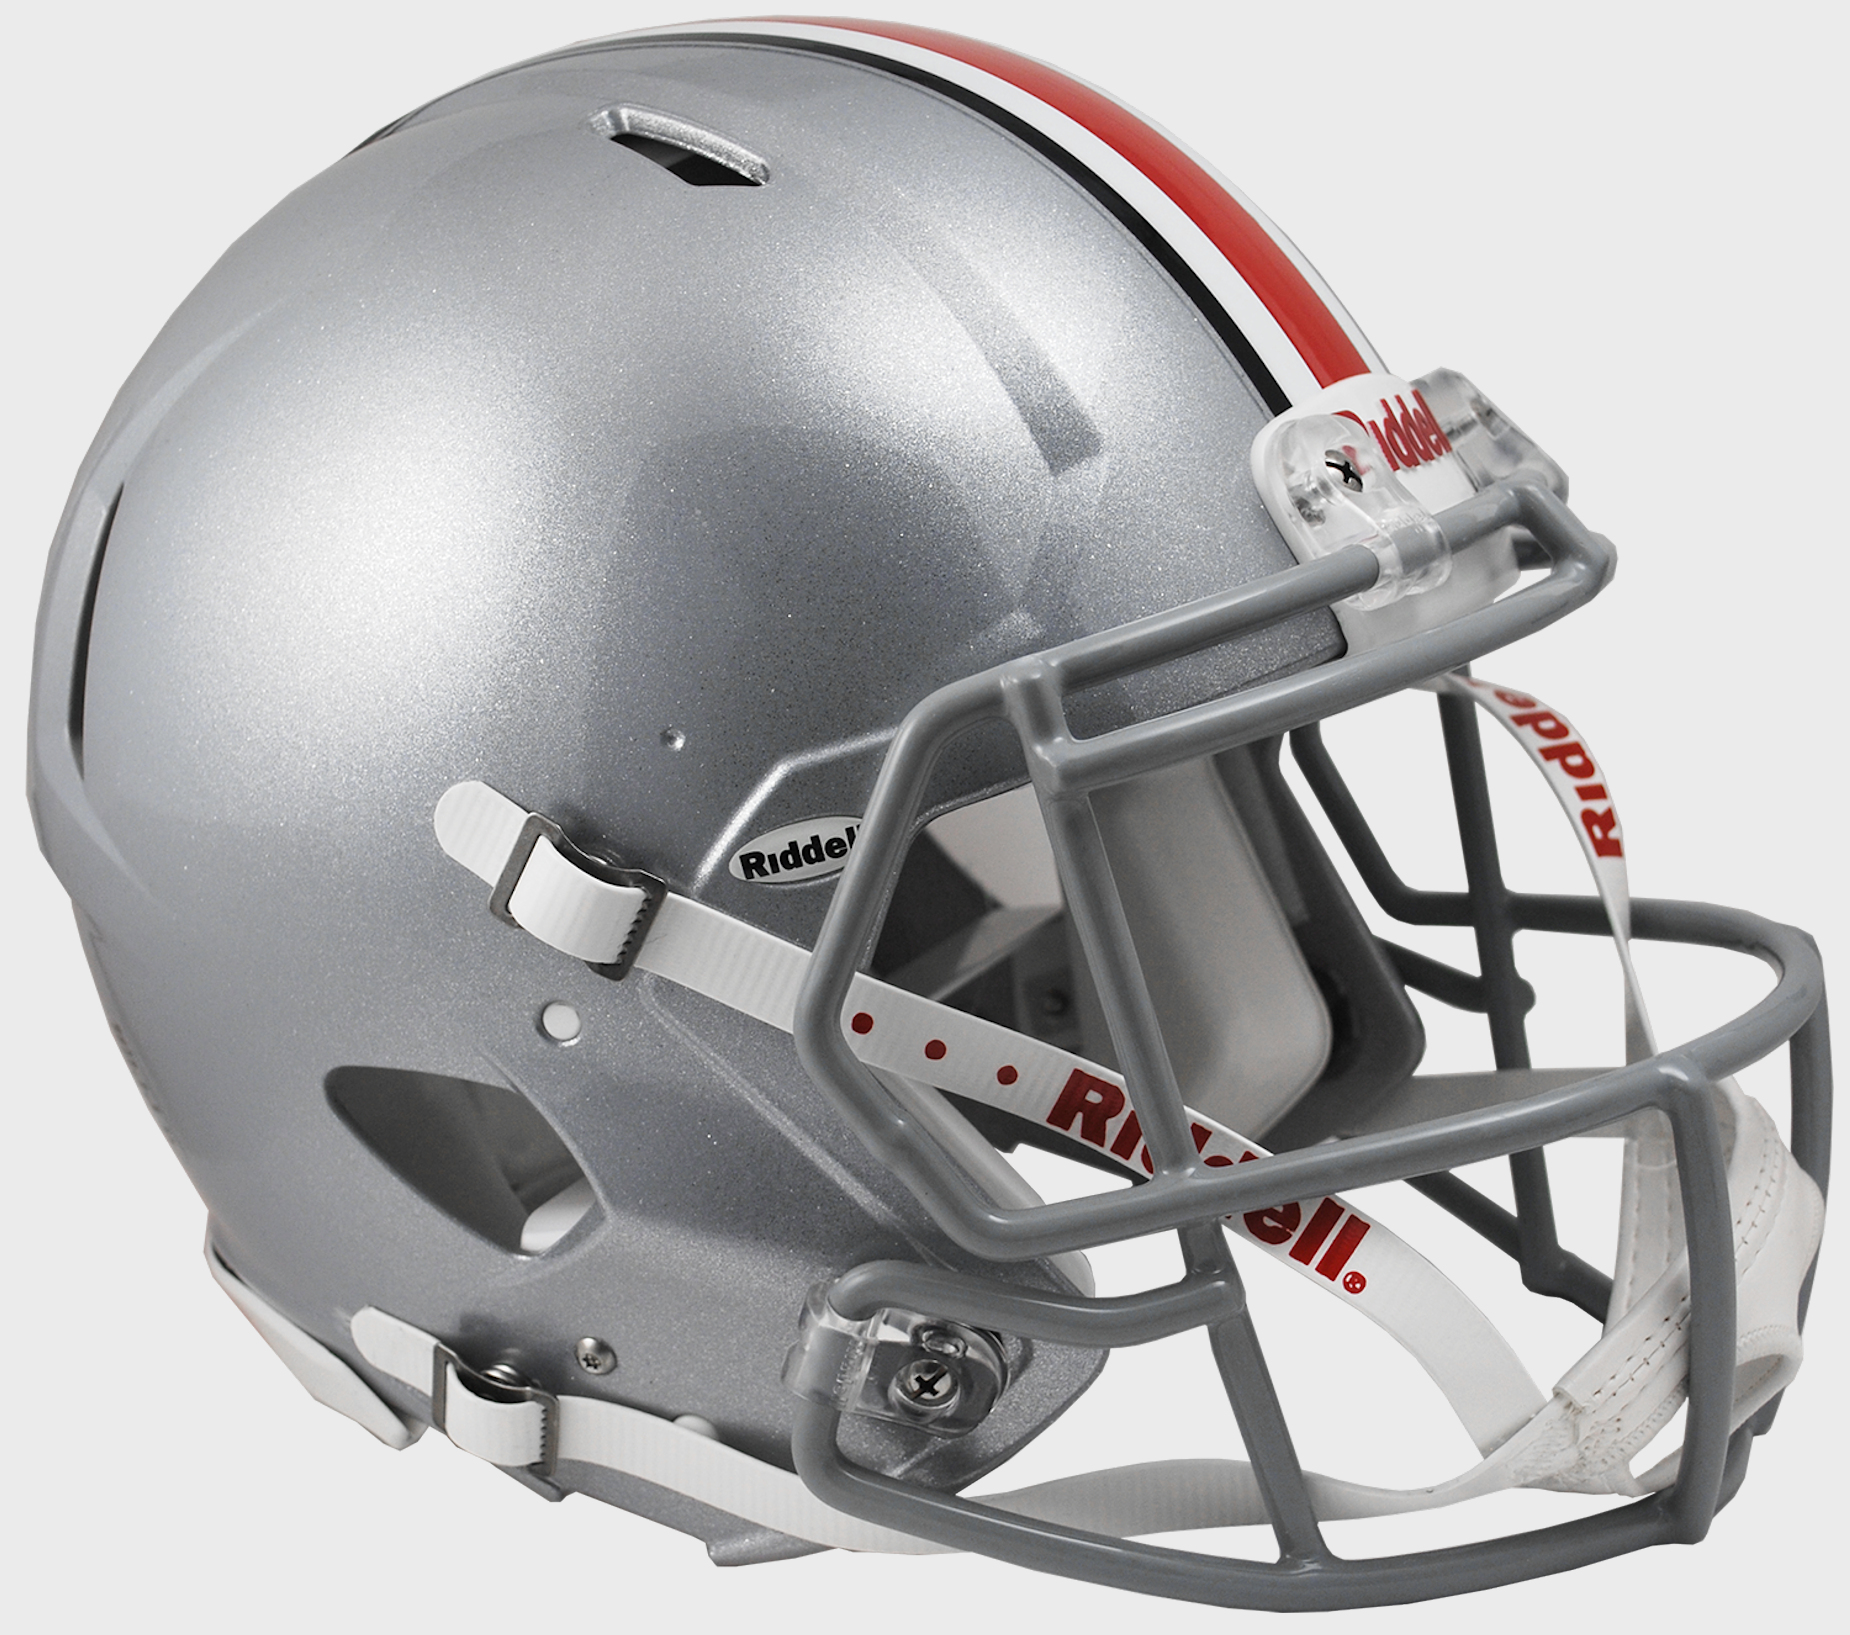 Ohio State Buckeyes authentic full size helmet